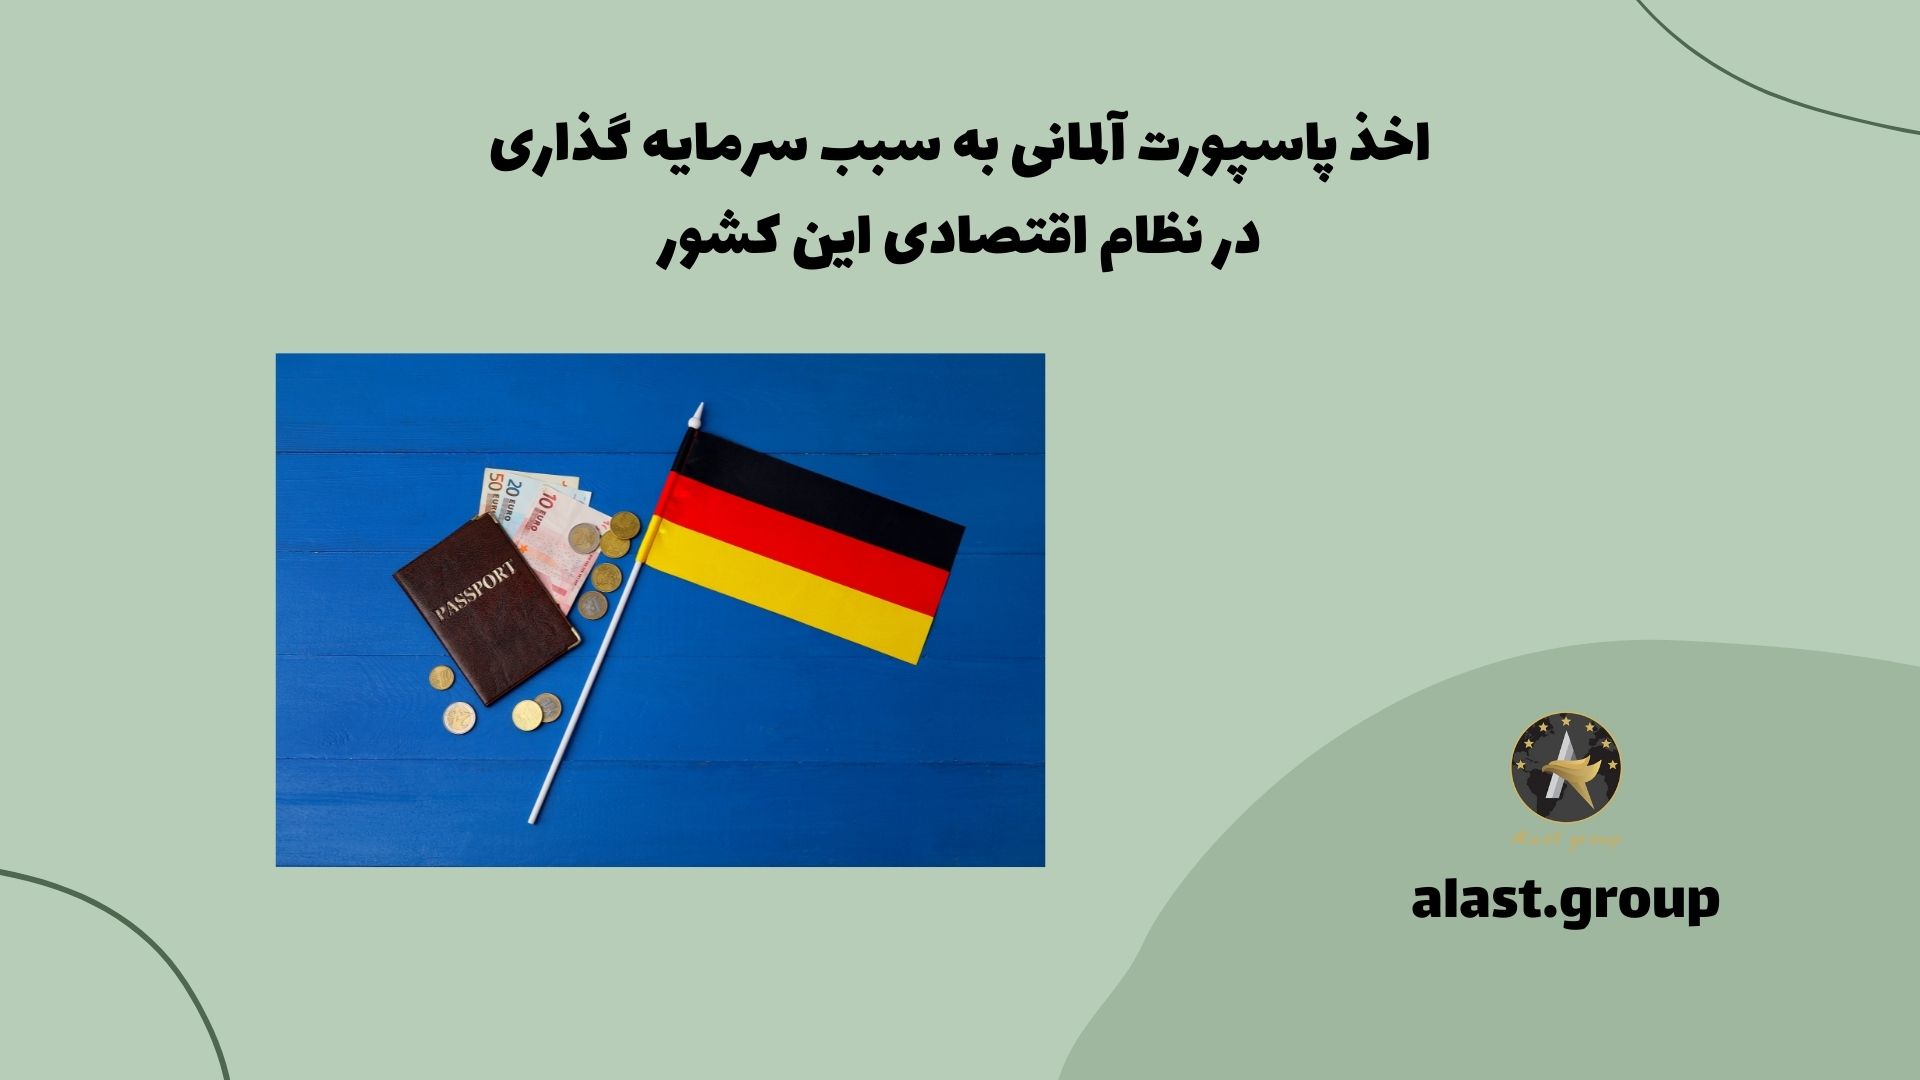 اخذ پاسپورت آلمانی به سبب سرمایه گذاری در نظام اقتصادی این کشور